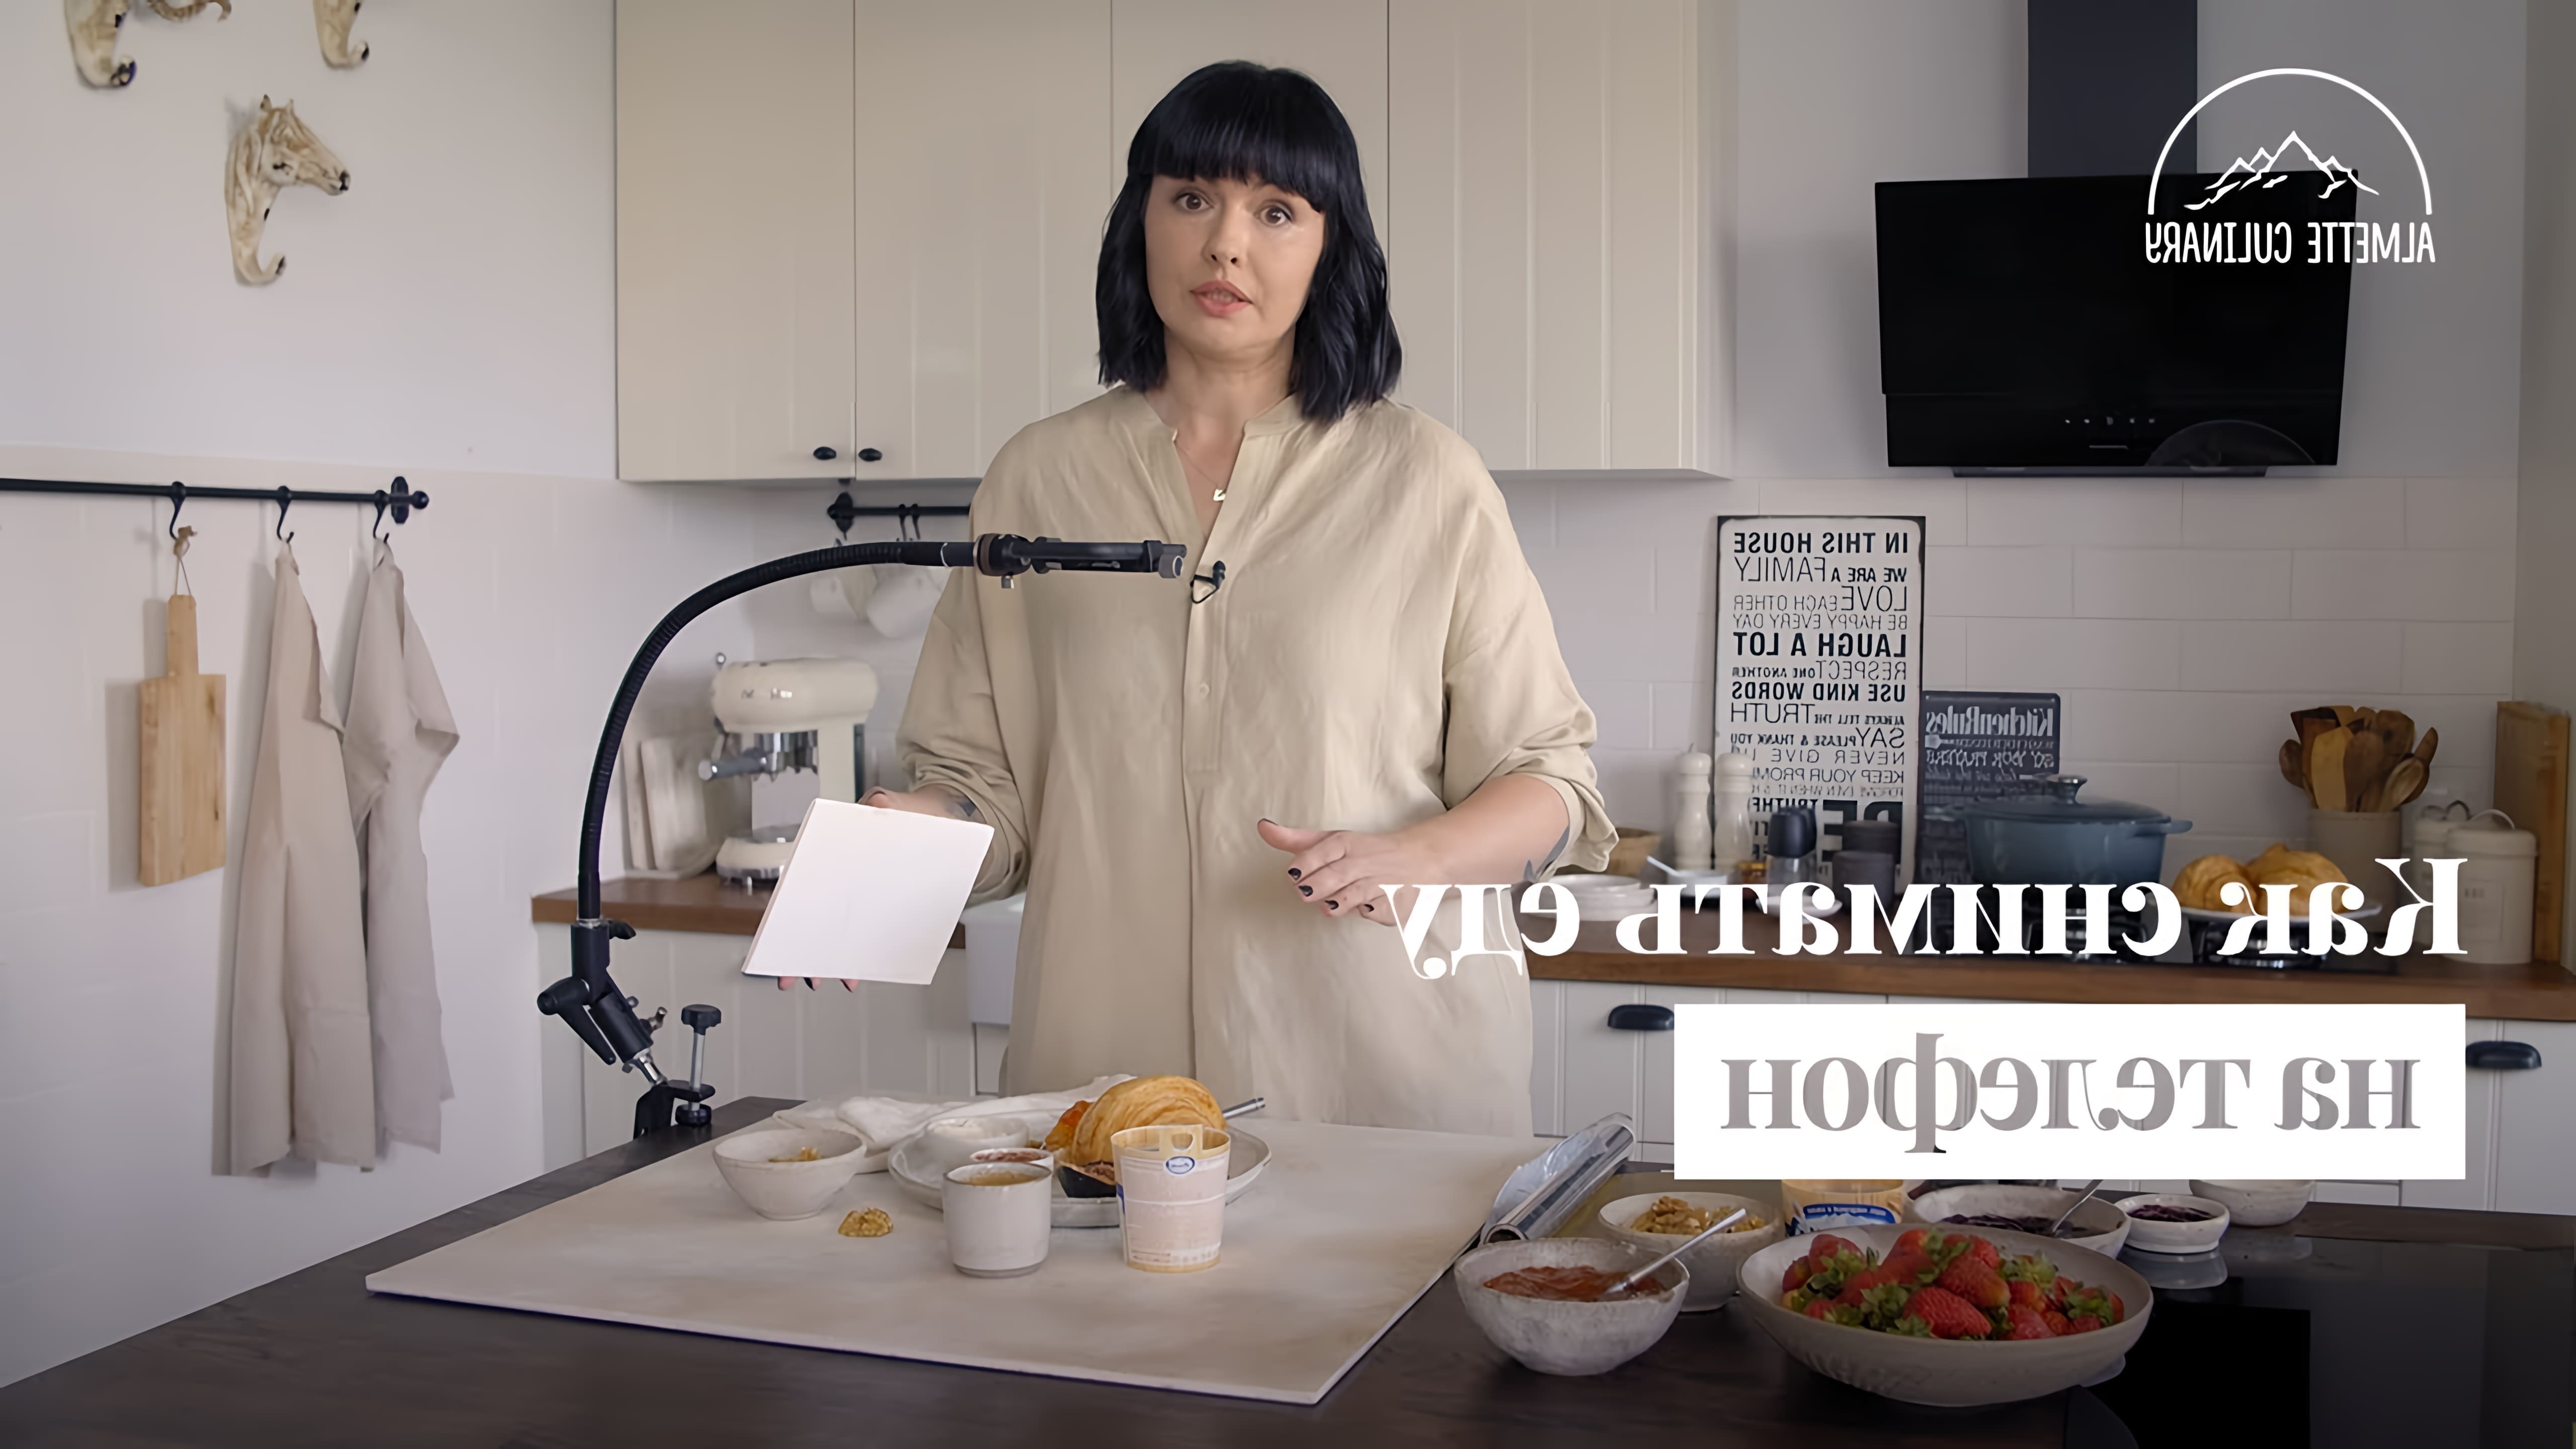 В этом видео Катя Дёмина, профессиональный фотограф и food стилист, рассказывает о том, как снимать еду на телефон